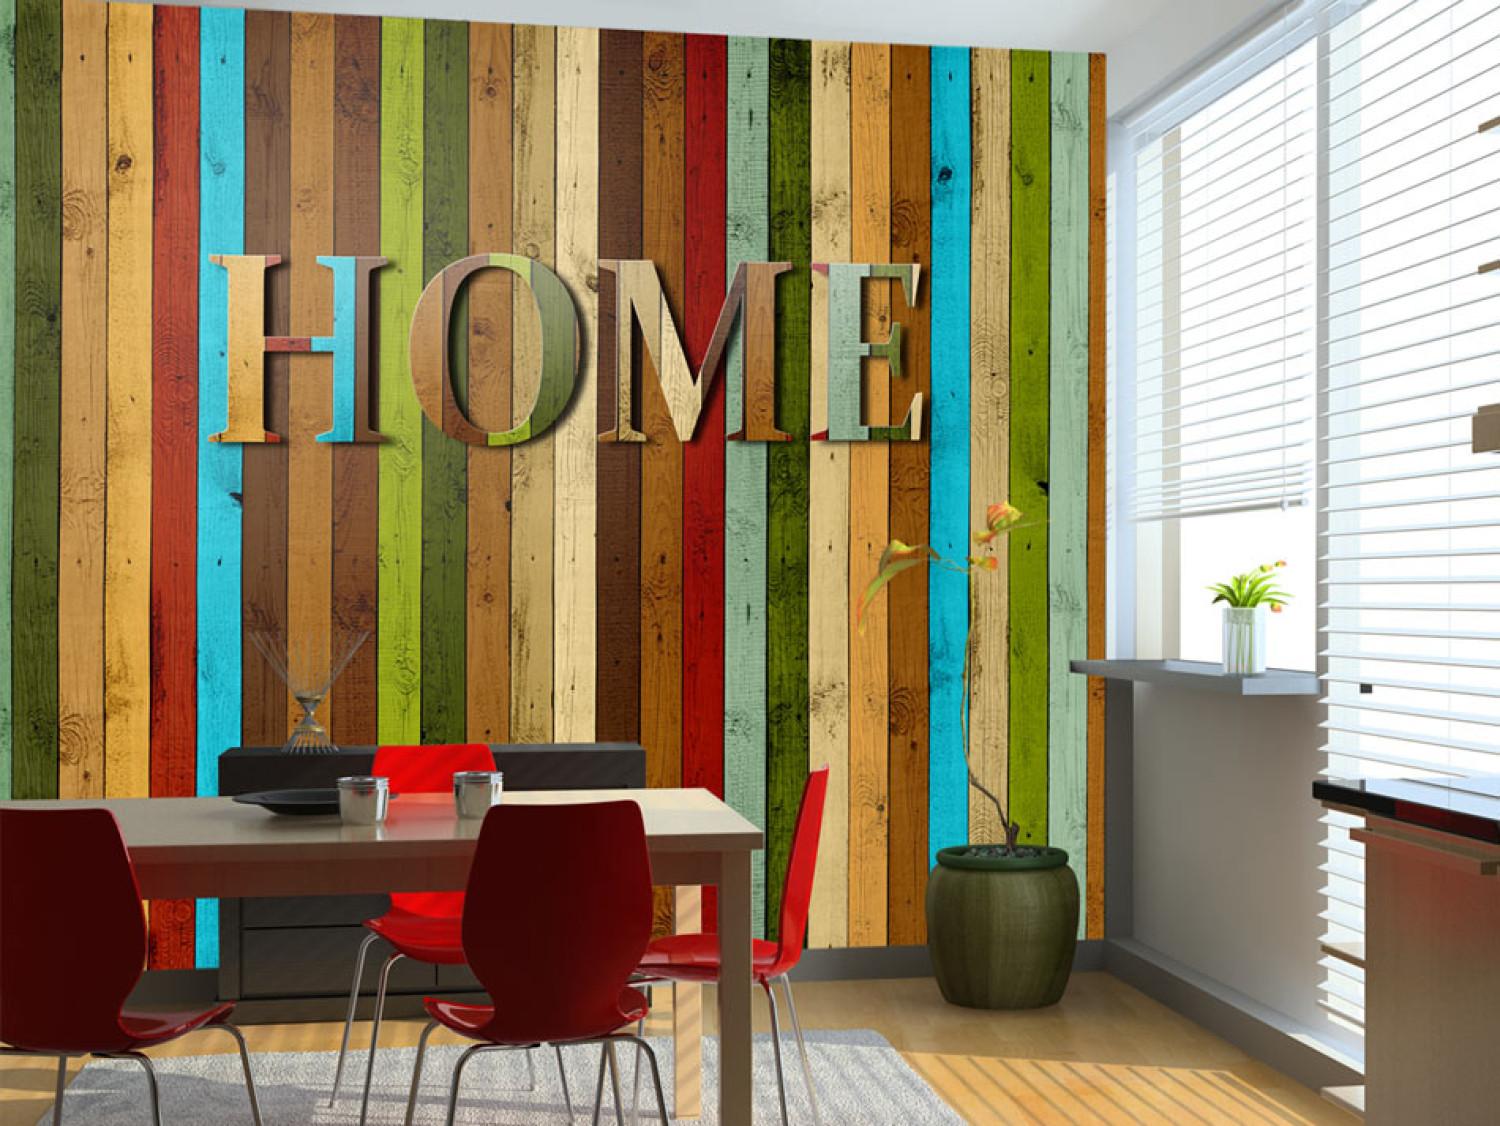 Fotomural Home - colorida frase casa en tablas de madera verticales